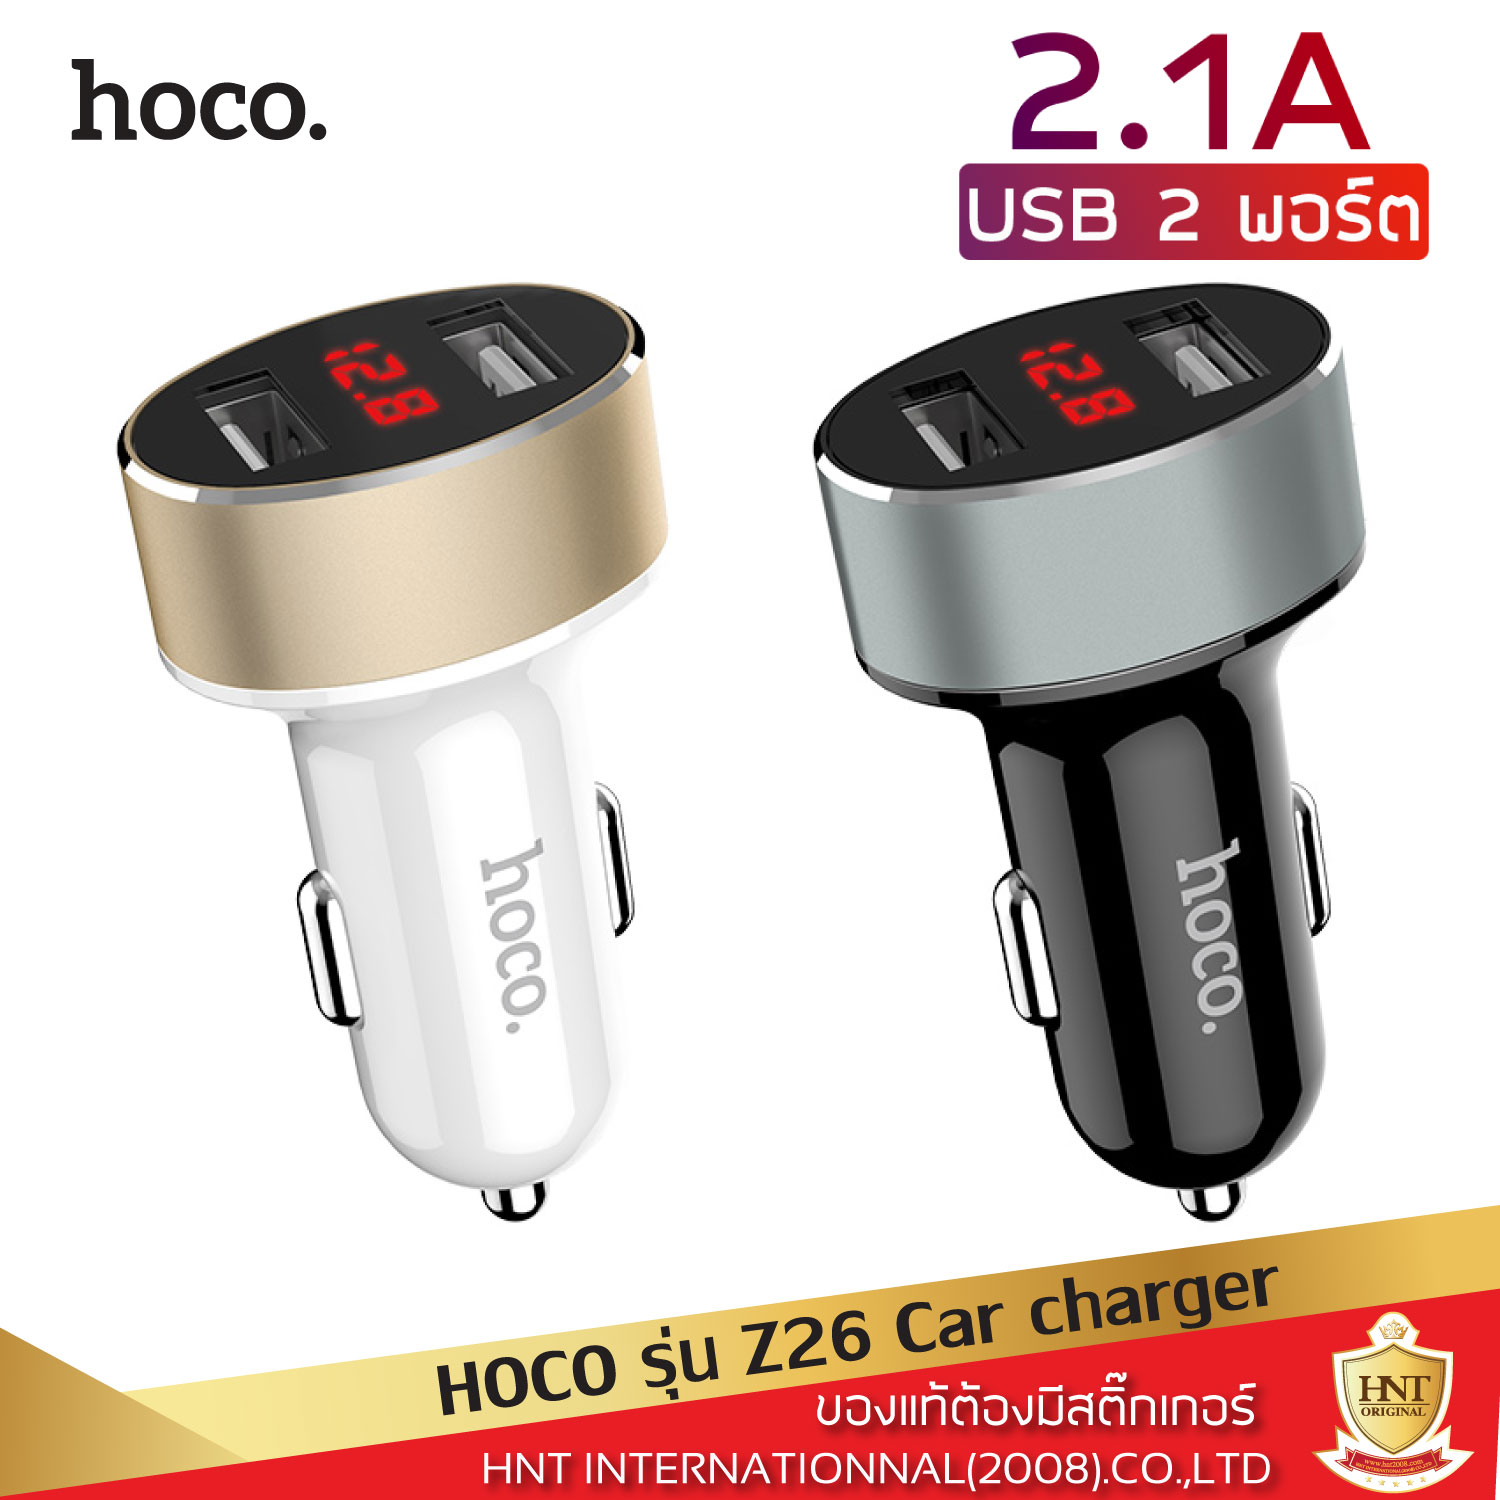 อุปกรณ์ชาร์จมือถือในรถ Car charger Hoco รุ่น Z26 พร้อมหน้าจอ LED แสดงโวลท์แบตเตอรี่ และ กระแสจ่ายไฟ ช่องให้ชาร์จได้ 2 ช่อง (Port) ที่ชาร์จมือถือในรถ ที่ชาร์จในรถ ของแท้ HNT รับประกันการใช้งาน 6 เดือน